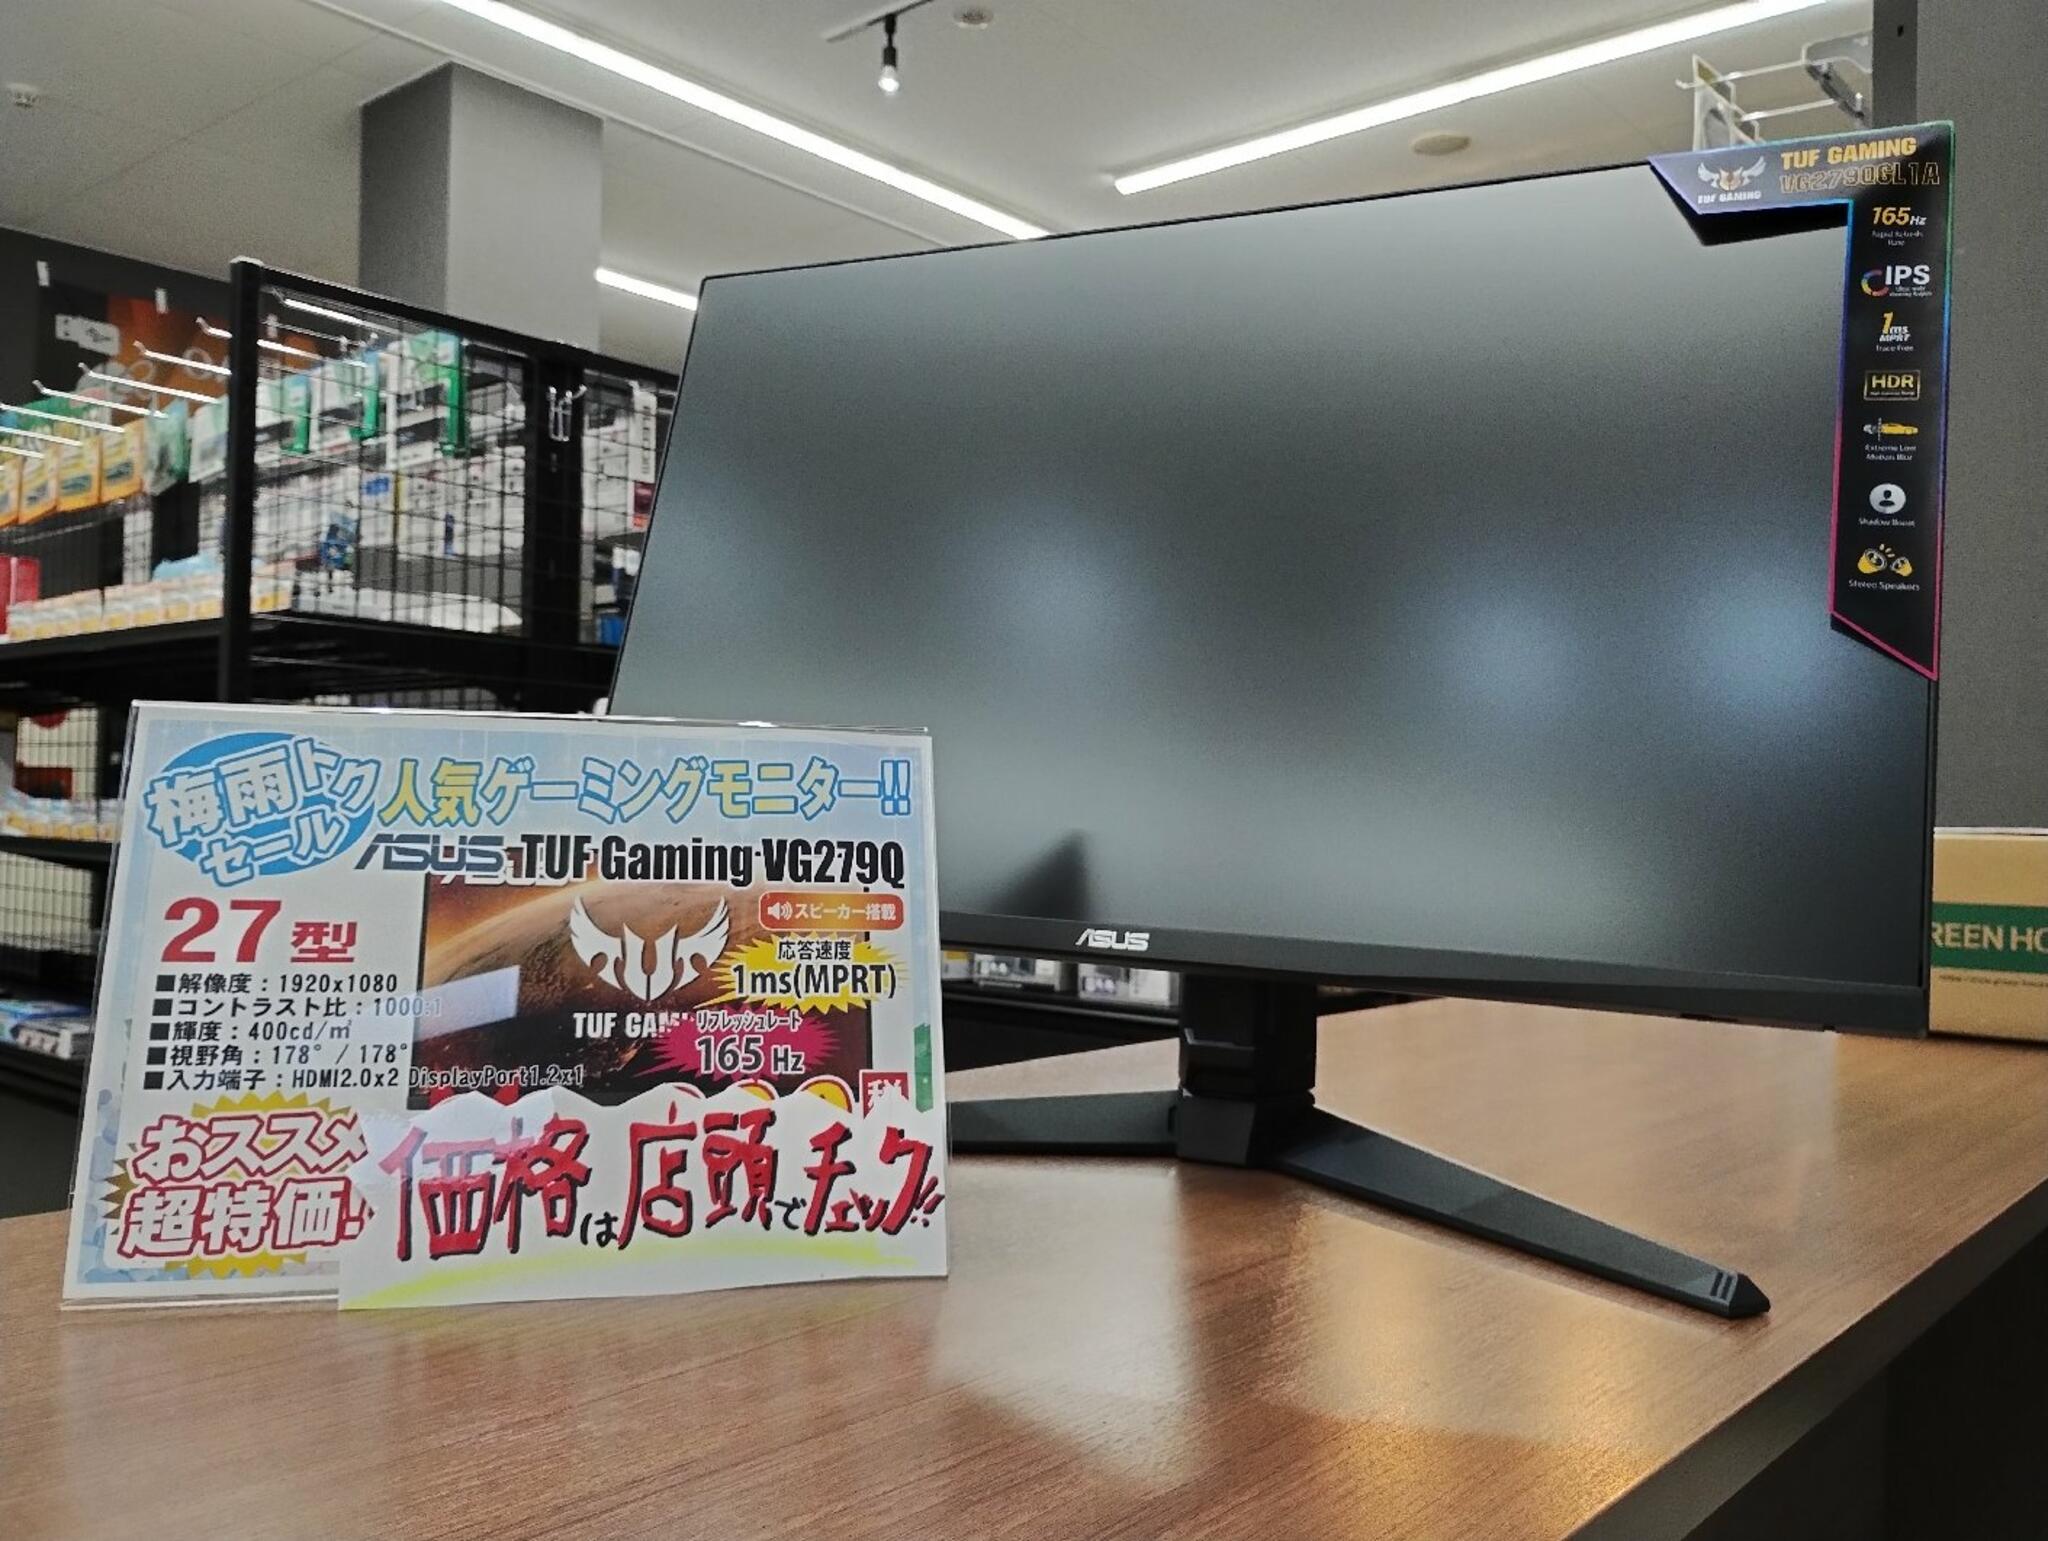 パソコン専門店 大西ジム 新長田店からのお知らせ(超コスパゲーミングモニターご購入頂きました！「TUF GAMING VG279Q」)に関する写真